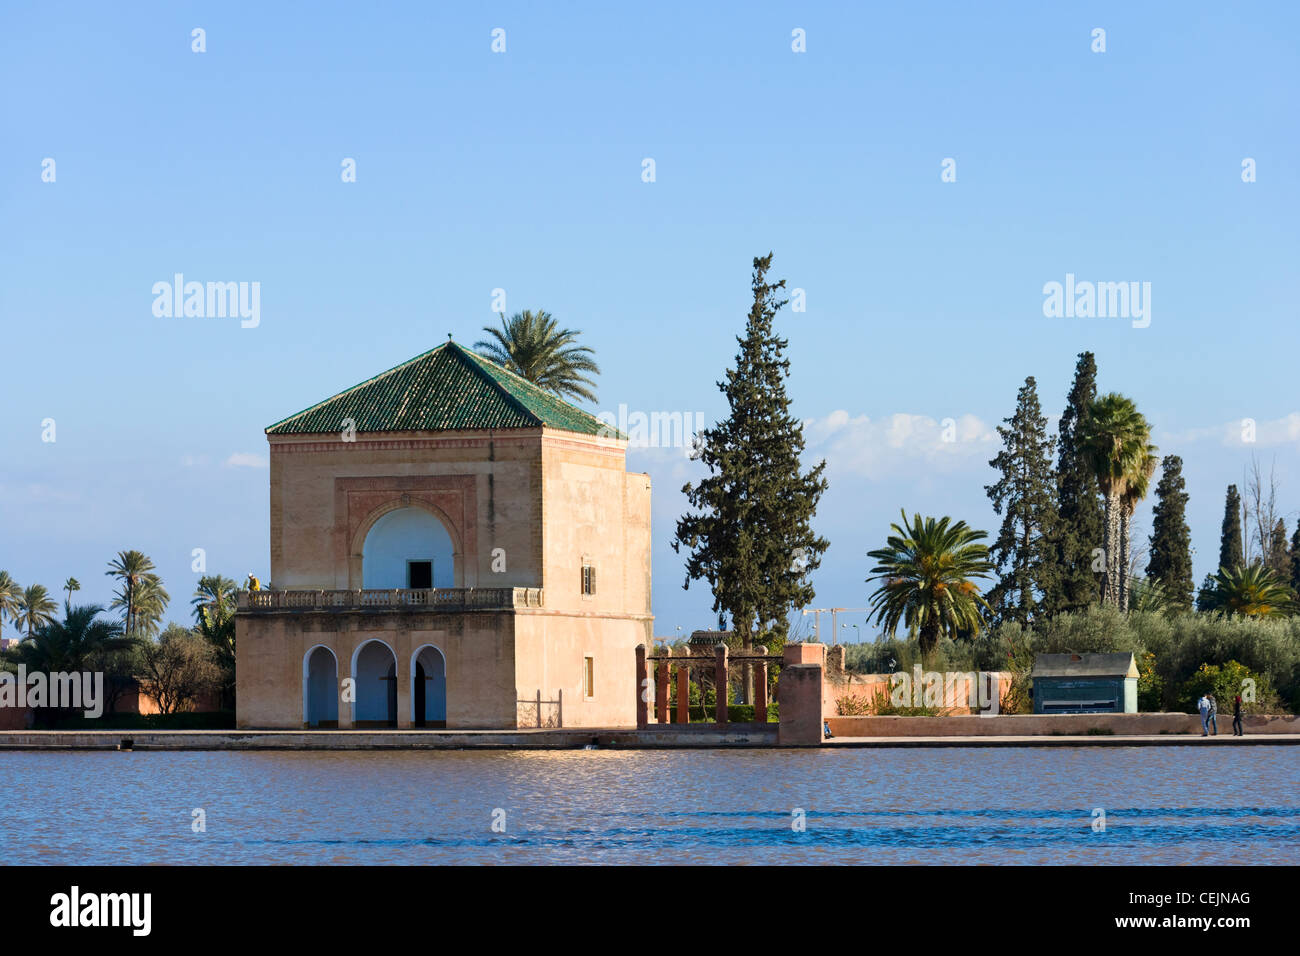 Vista del pabellón y la piscina en los jardines de Menara, Marrakech, Marruecos, Norte de África Foto de stock